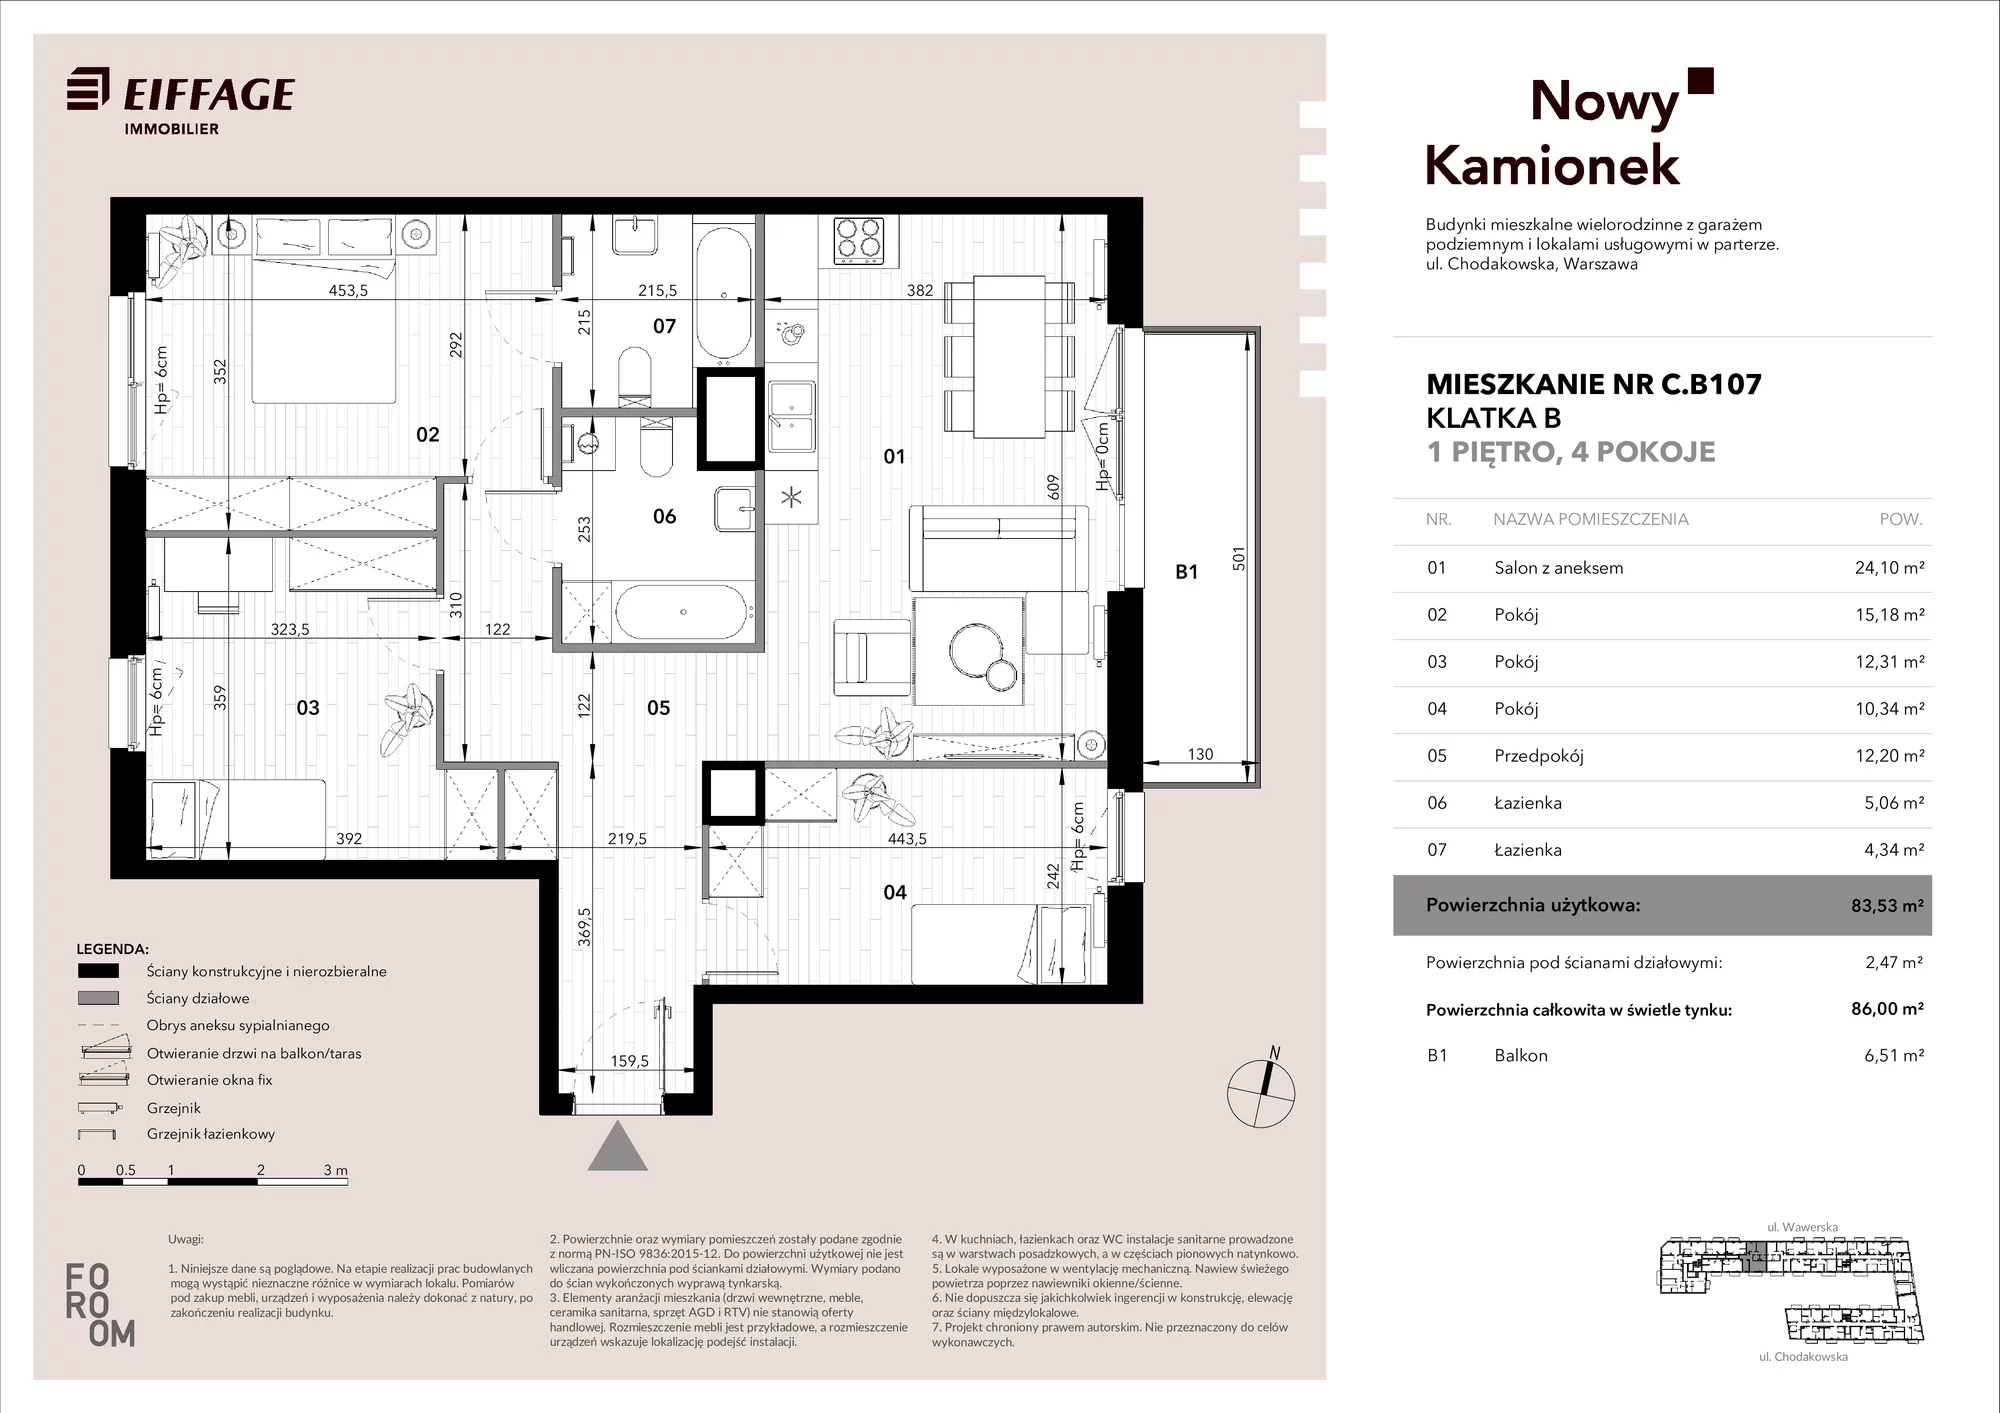 Mieszkanie 83,53 m², piętro 1, oferta nr C.B107, Nowy Kamionek, Warszawa, Praga Południe, Kamionek, ul. Chodakowska